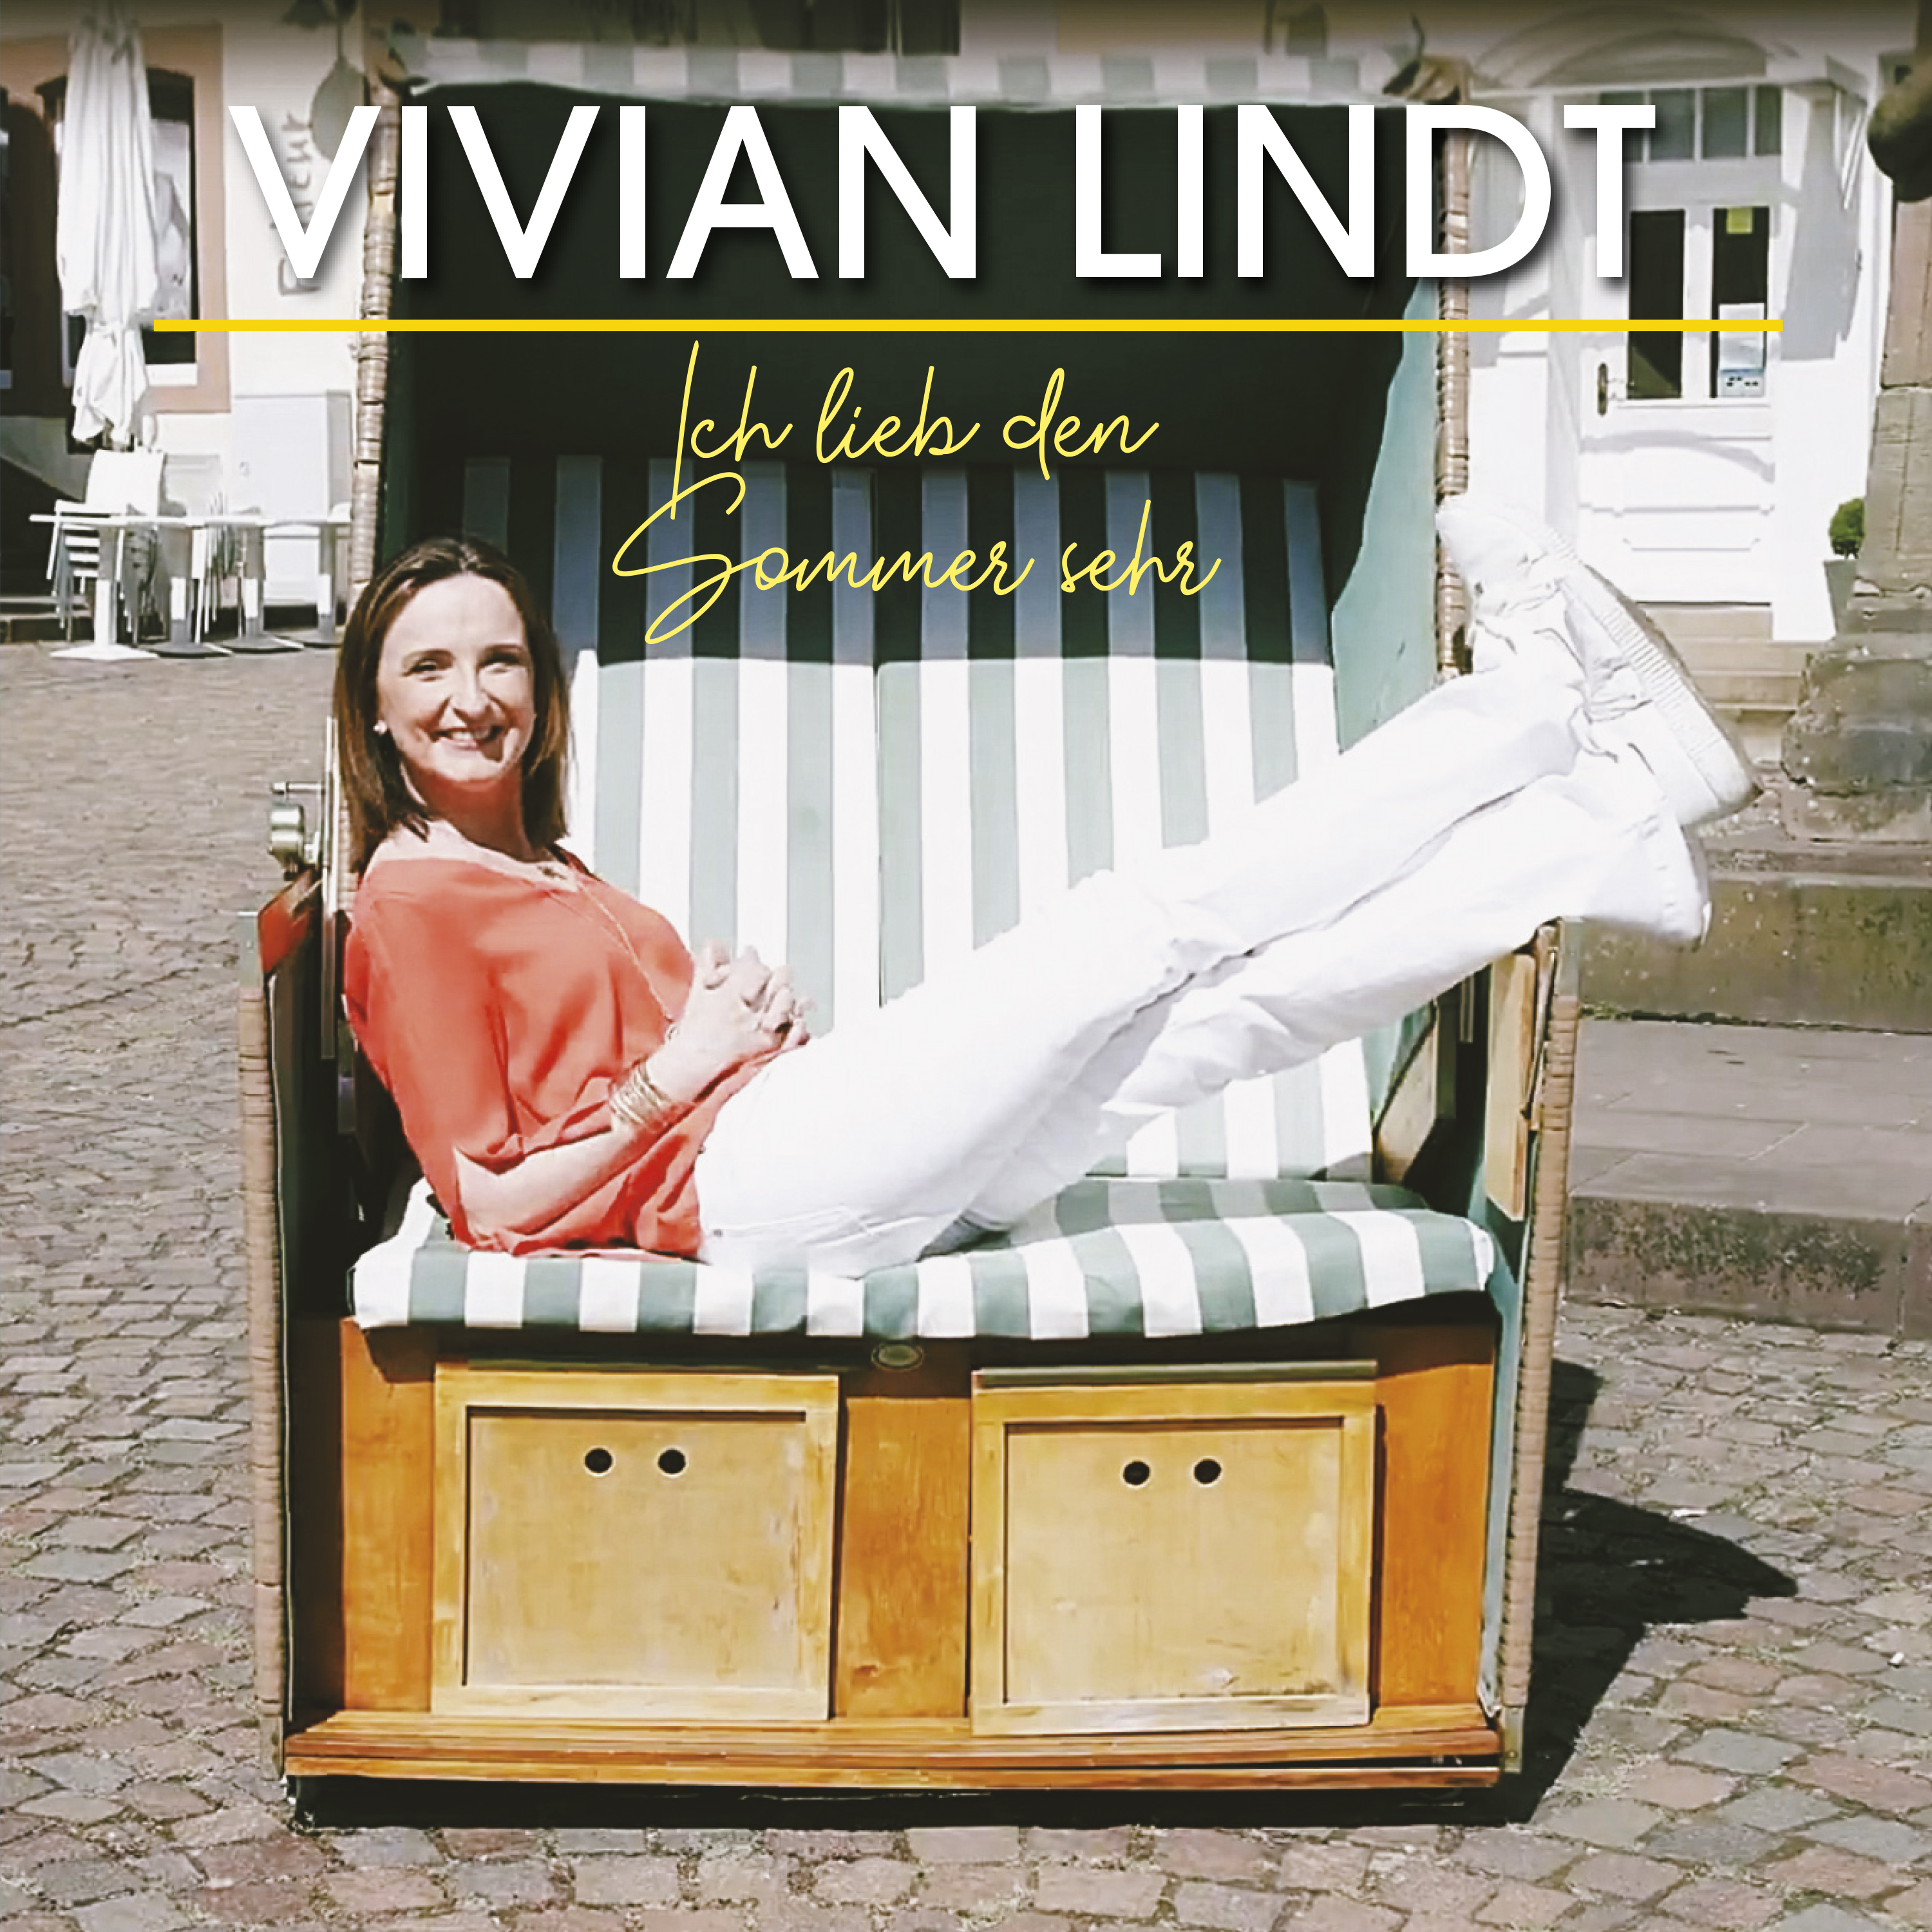 VIVIAN LINDT *Ich lieb den Sommer sehr (Download-Track)